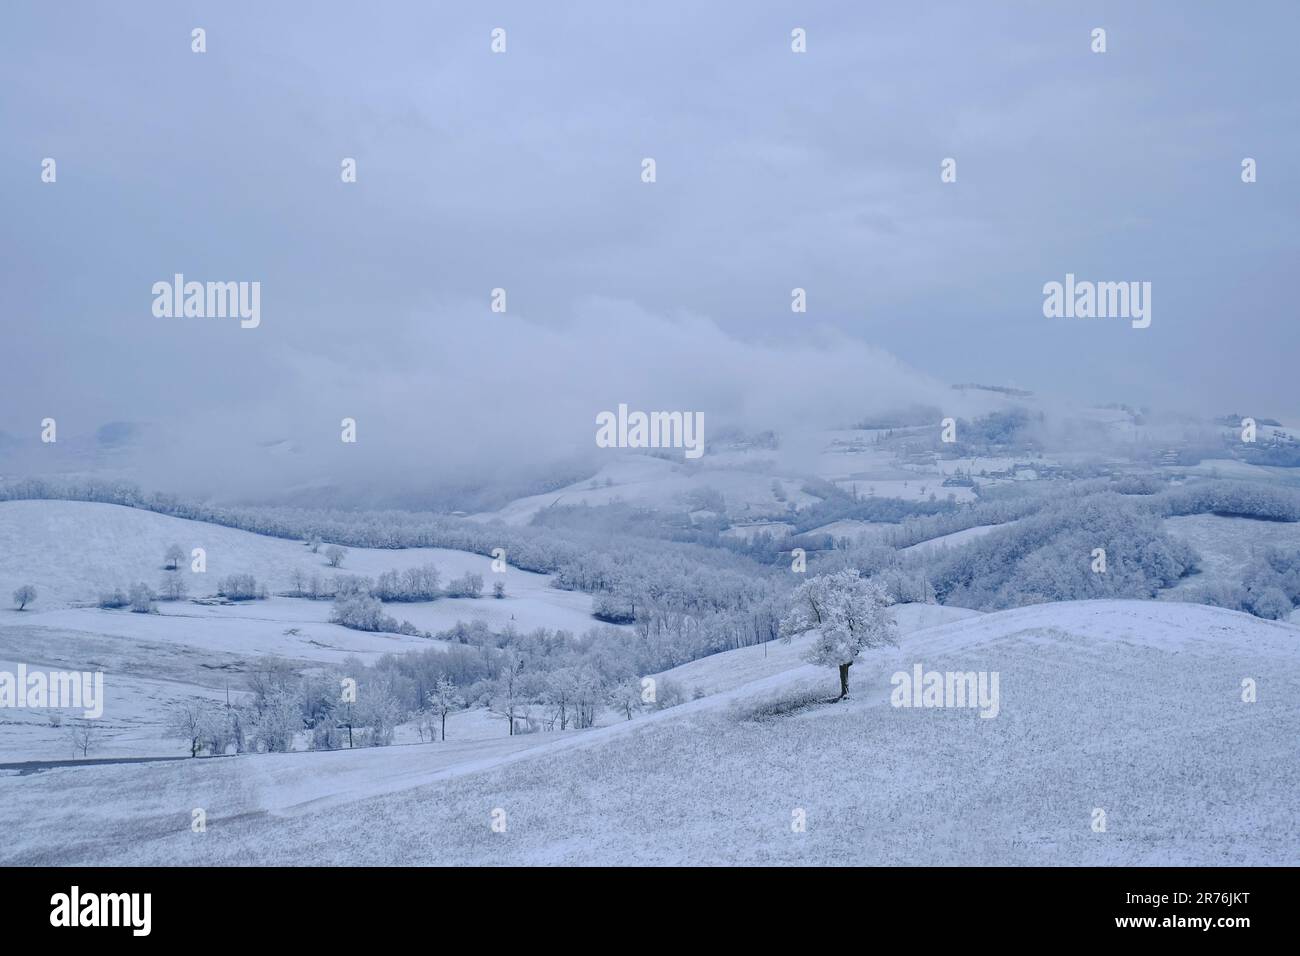 Schneesturm in den Bergen. Schneebedeckte Hügel, Berge, Natur, Horizont. Natürlicher Hintergrund. Appennino Tosco-emiliano Stockfoto